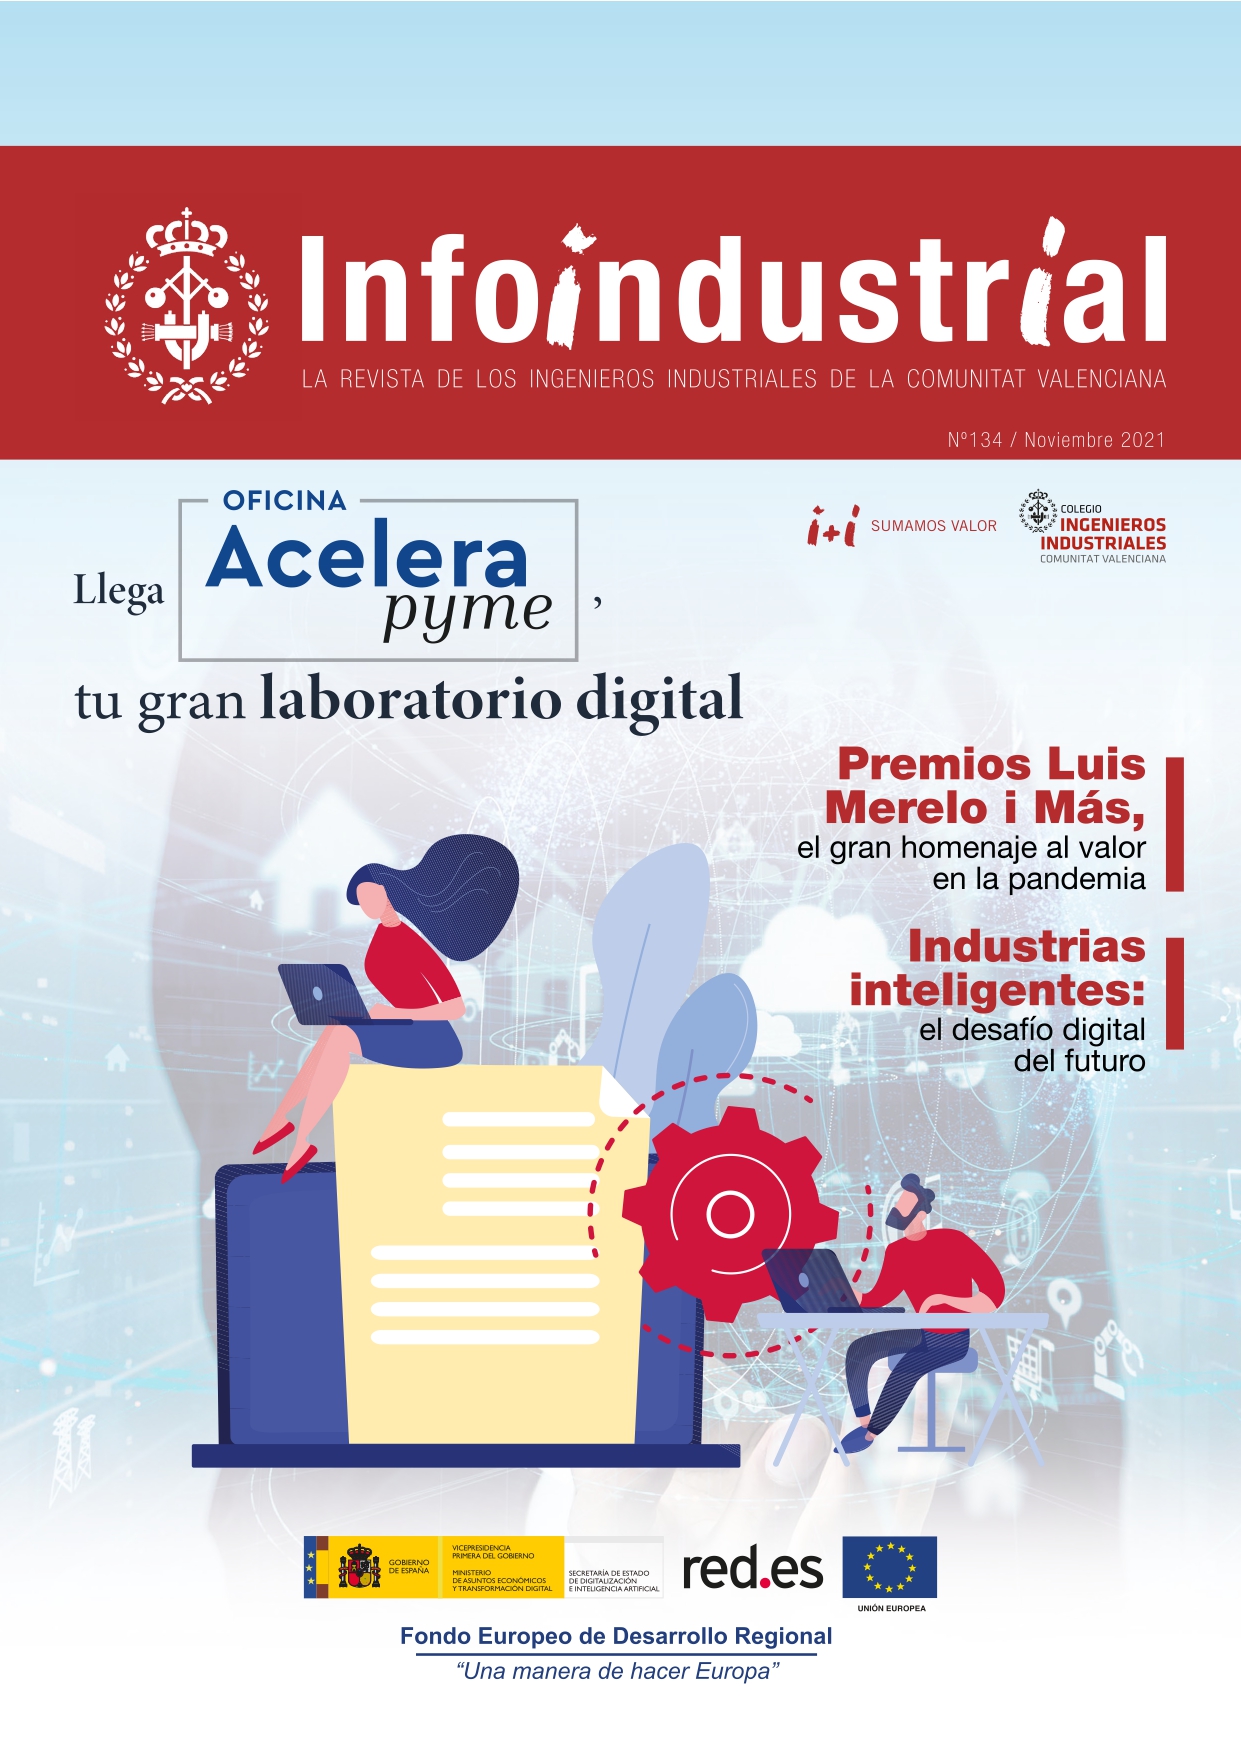 Ya disponible el nuevo número de la revista Infoindustrial con un especial sobre el Proyecto Acelera Pyme, los Premios Luis Merelo i Mas y mucho más.